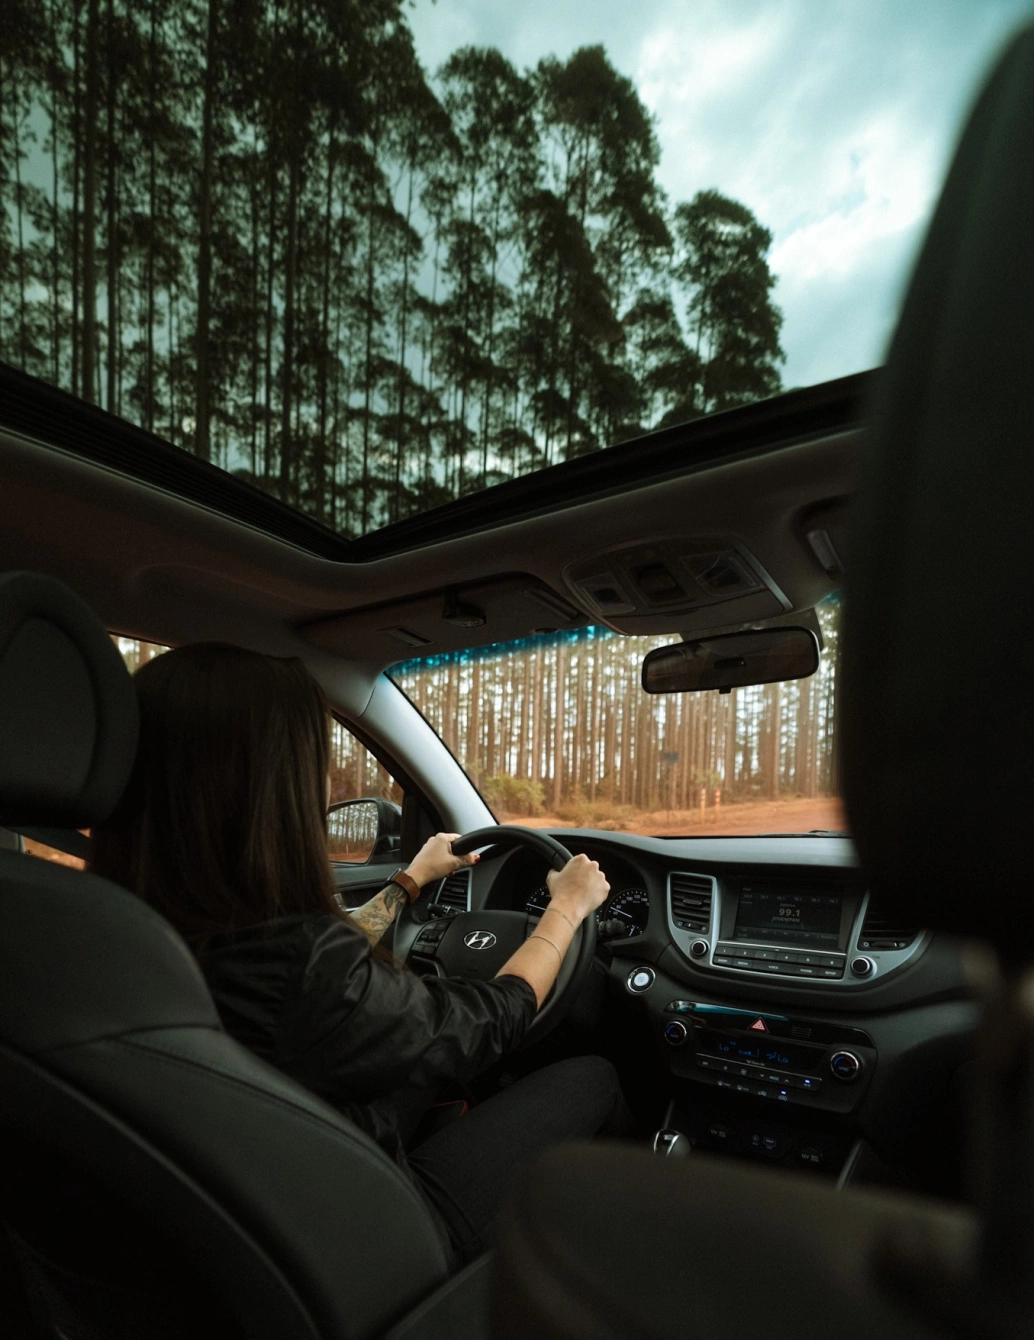 Mulher com as mãos no volante no interior de um carro, mostrando os bancos da frente, o painel e o teto solar, além de vegetação do lado de fora.